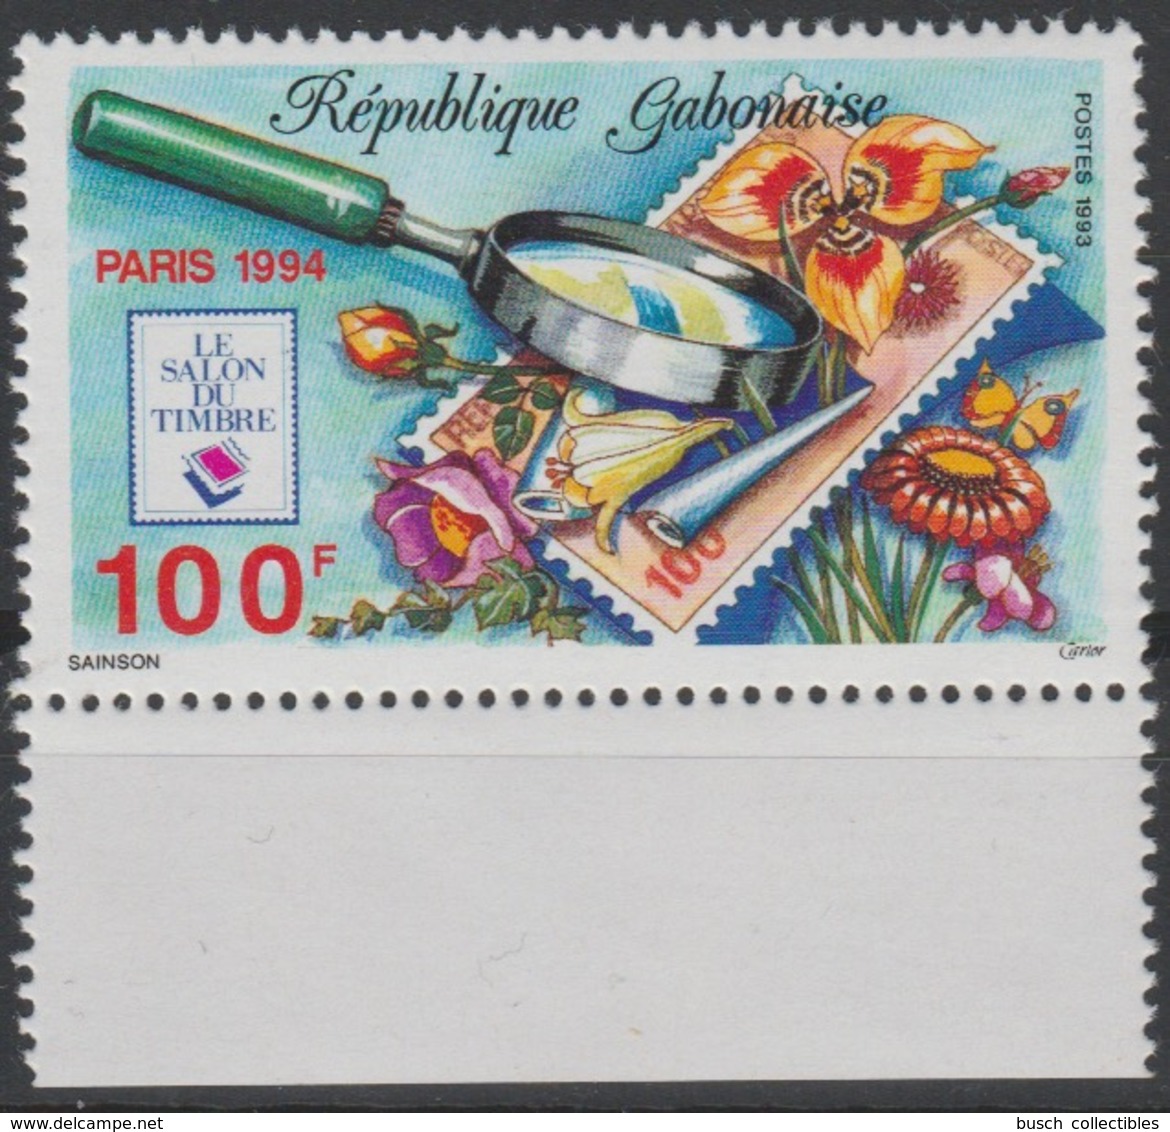 Gabon Gabun 1993 / 1994 Mi. 1159 Le Salon Du Timbre PARIS Flowers Fleurs Blüten Blumen Flore Flora Stamp On Stamp RARE ! - Gabon (1960-...)